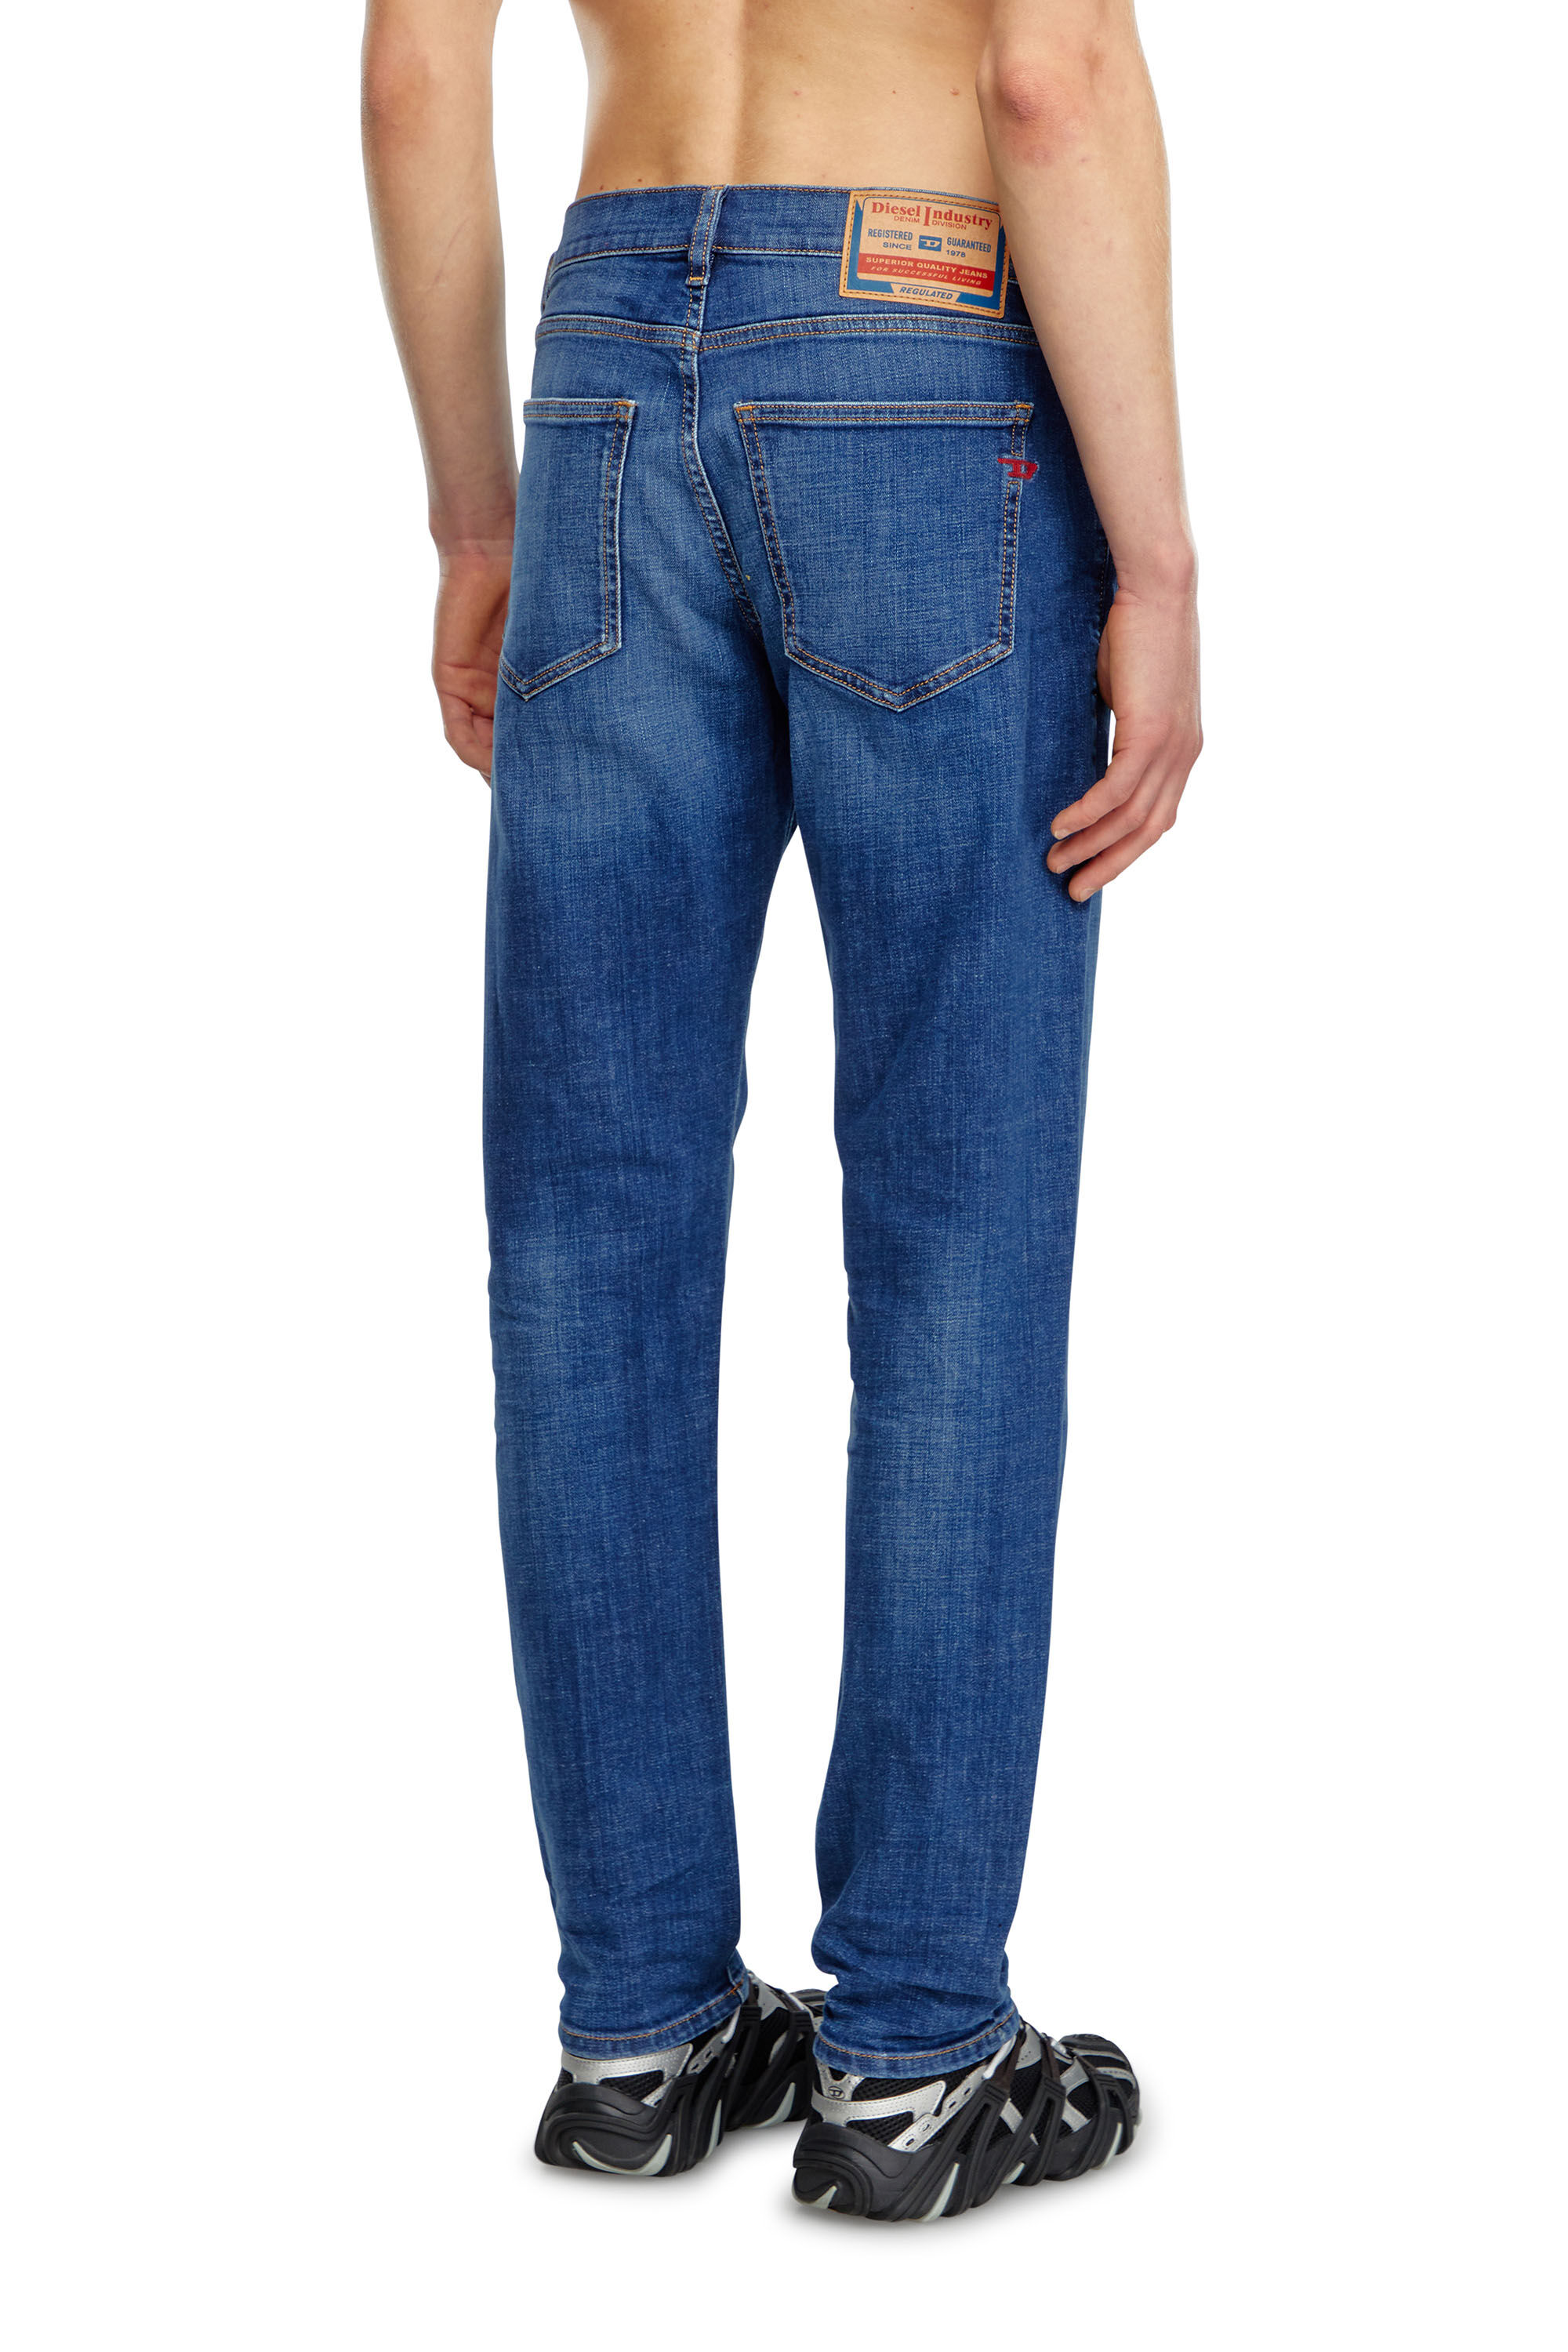 Diesel - Slim Jeans 2019 D-Strukt 09K04, Hombre Slim Jeans - 2019 D-Strukt in Azul marino - Image 4